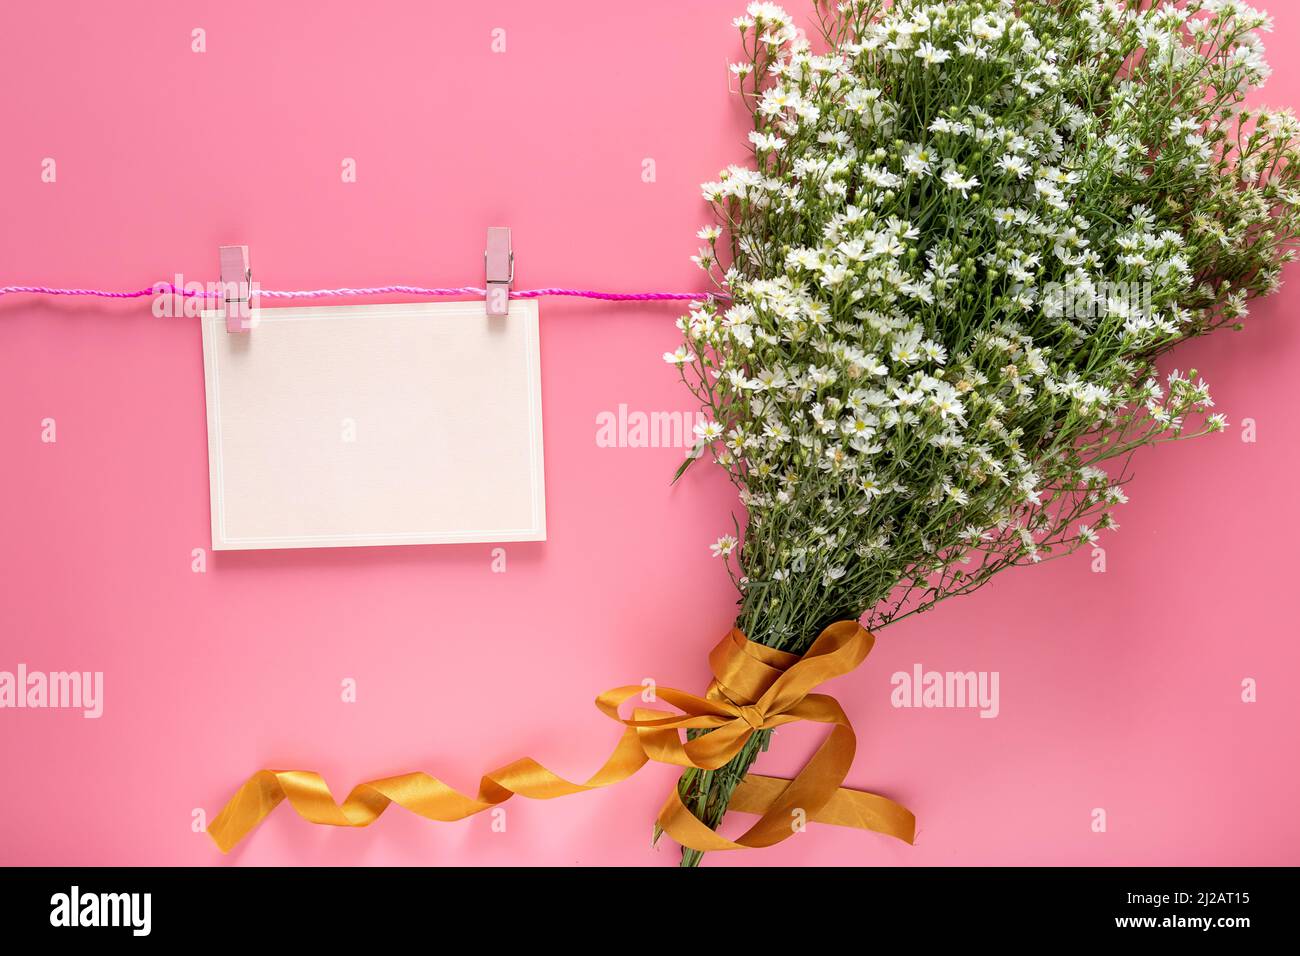 burlete de tarjeta rosa pastel nota hoja de papel en blanco colgar en la cuerda con la clavija de la ropa y primavera fresco blanco ramo de flores aisladas sobre fondo rosa. Foto de stock